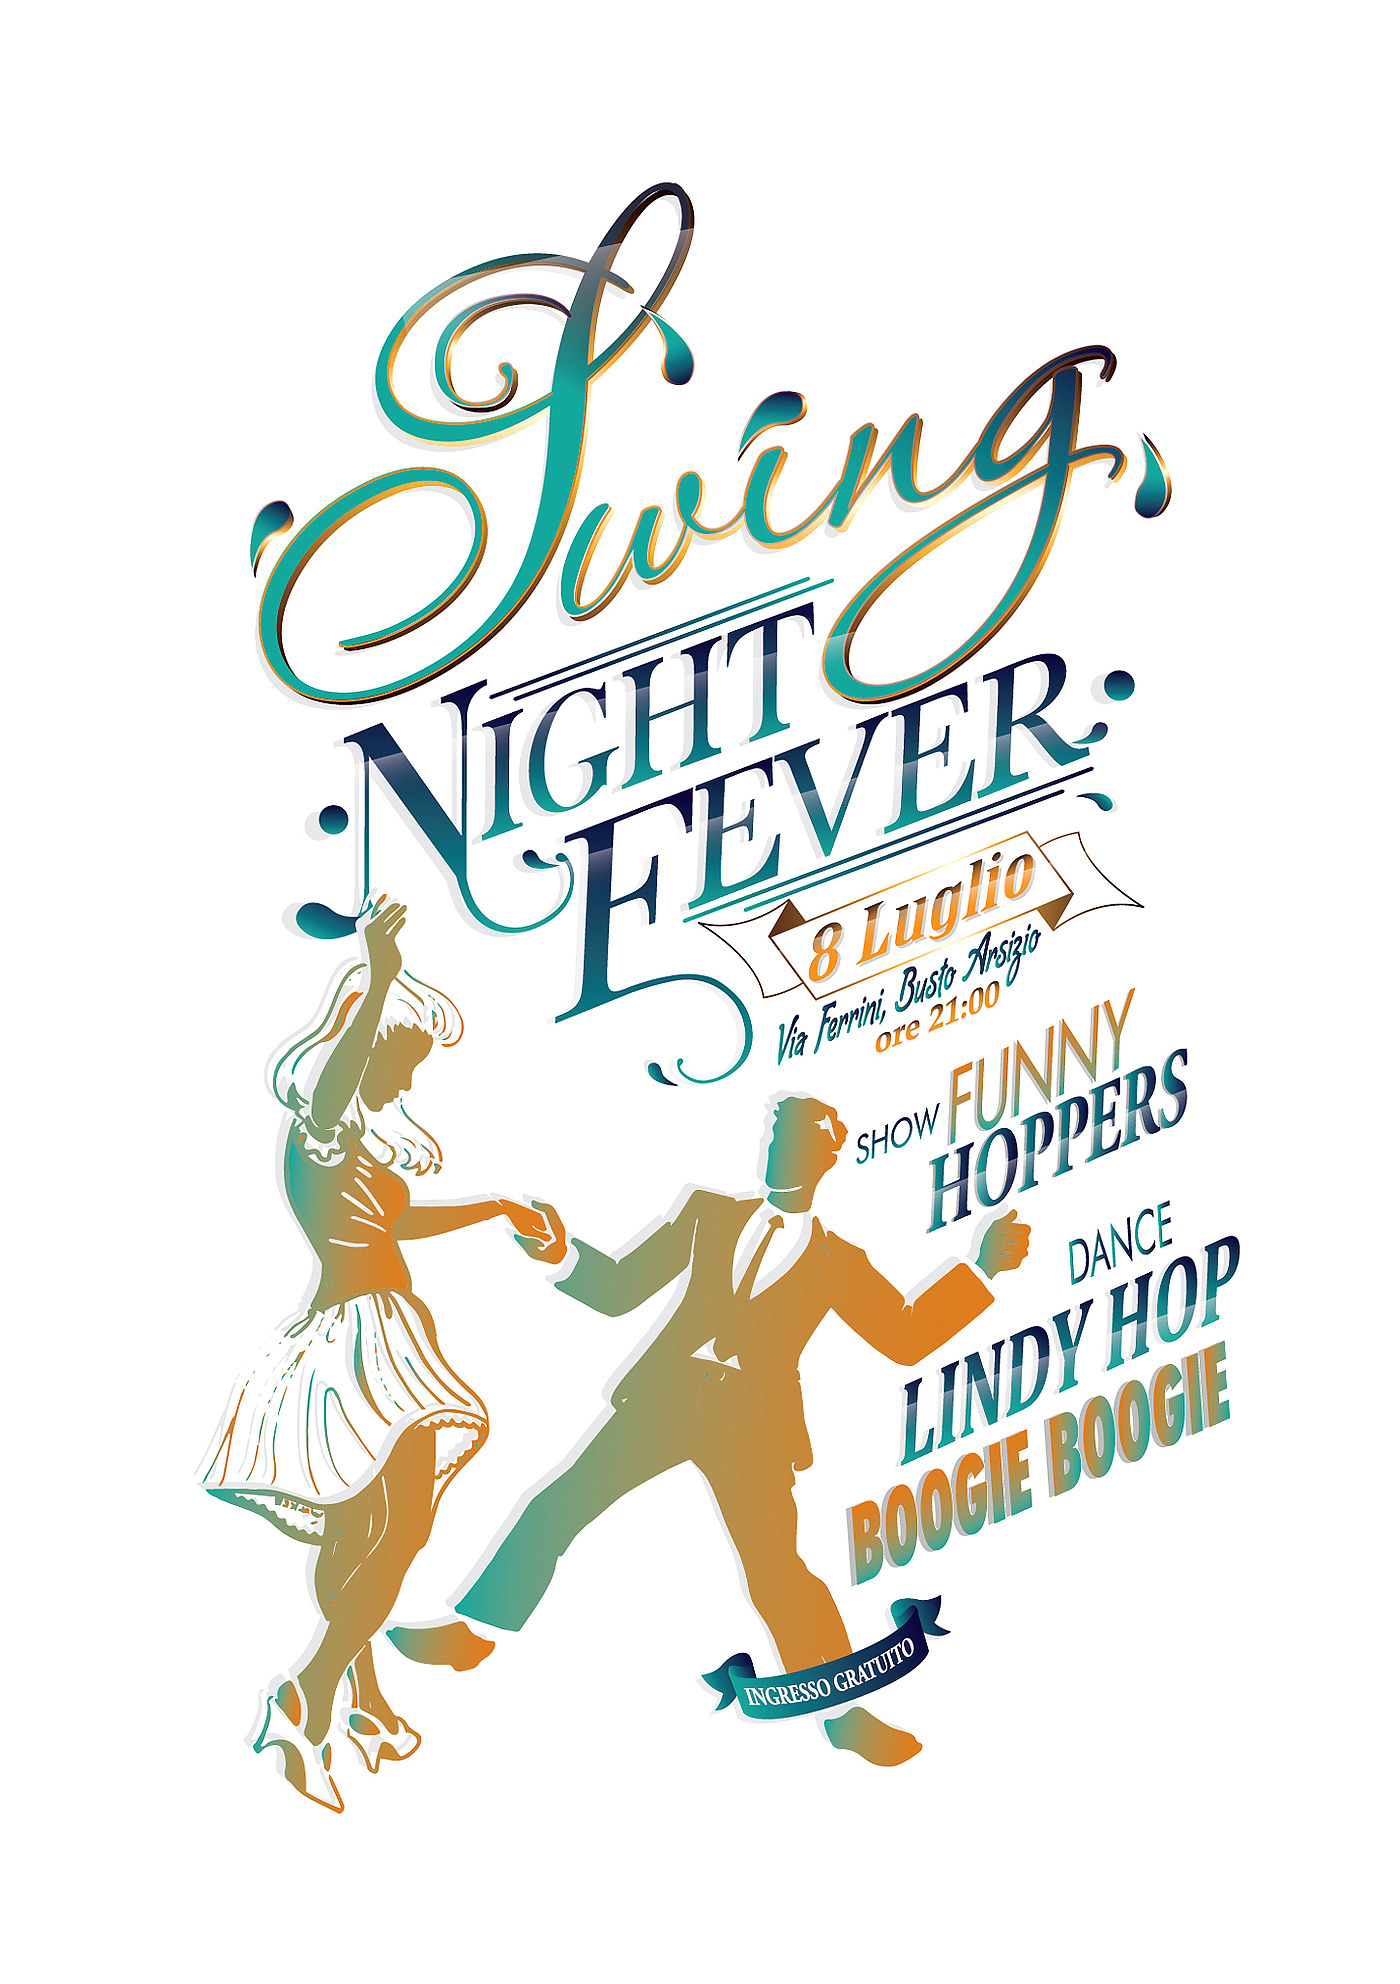 CMYK print font swing vintage lindy hop